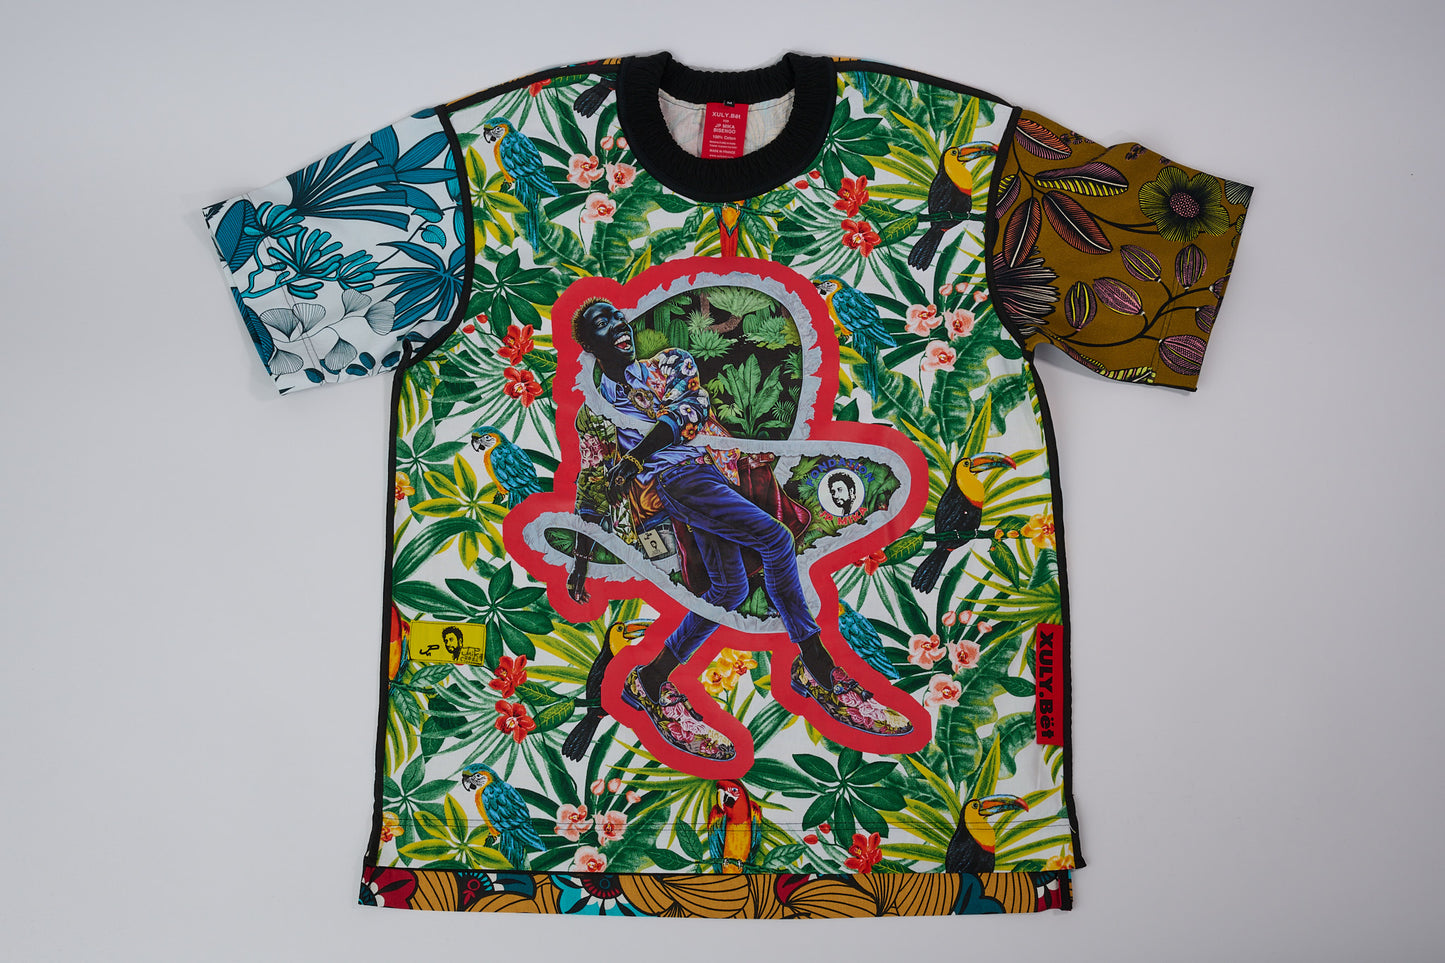 T-shirt BISENGO JP MIKA x XULY-BËT - Numéroté 3/65 - Taille M - Wearable-art inspiré du tableau "Magnifique" de la série de toiles BISENGO de JP MIKA.